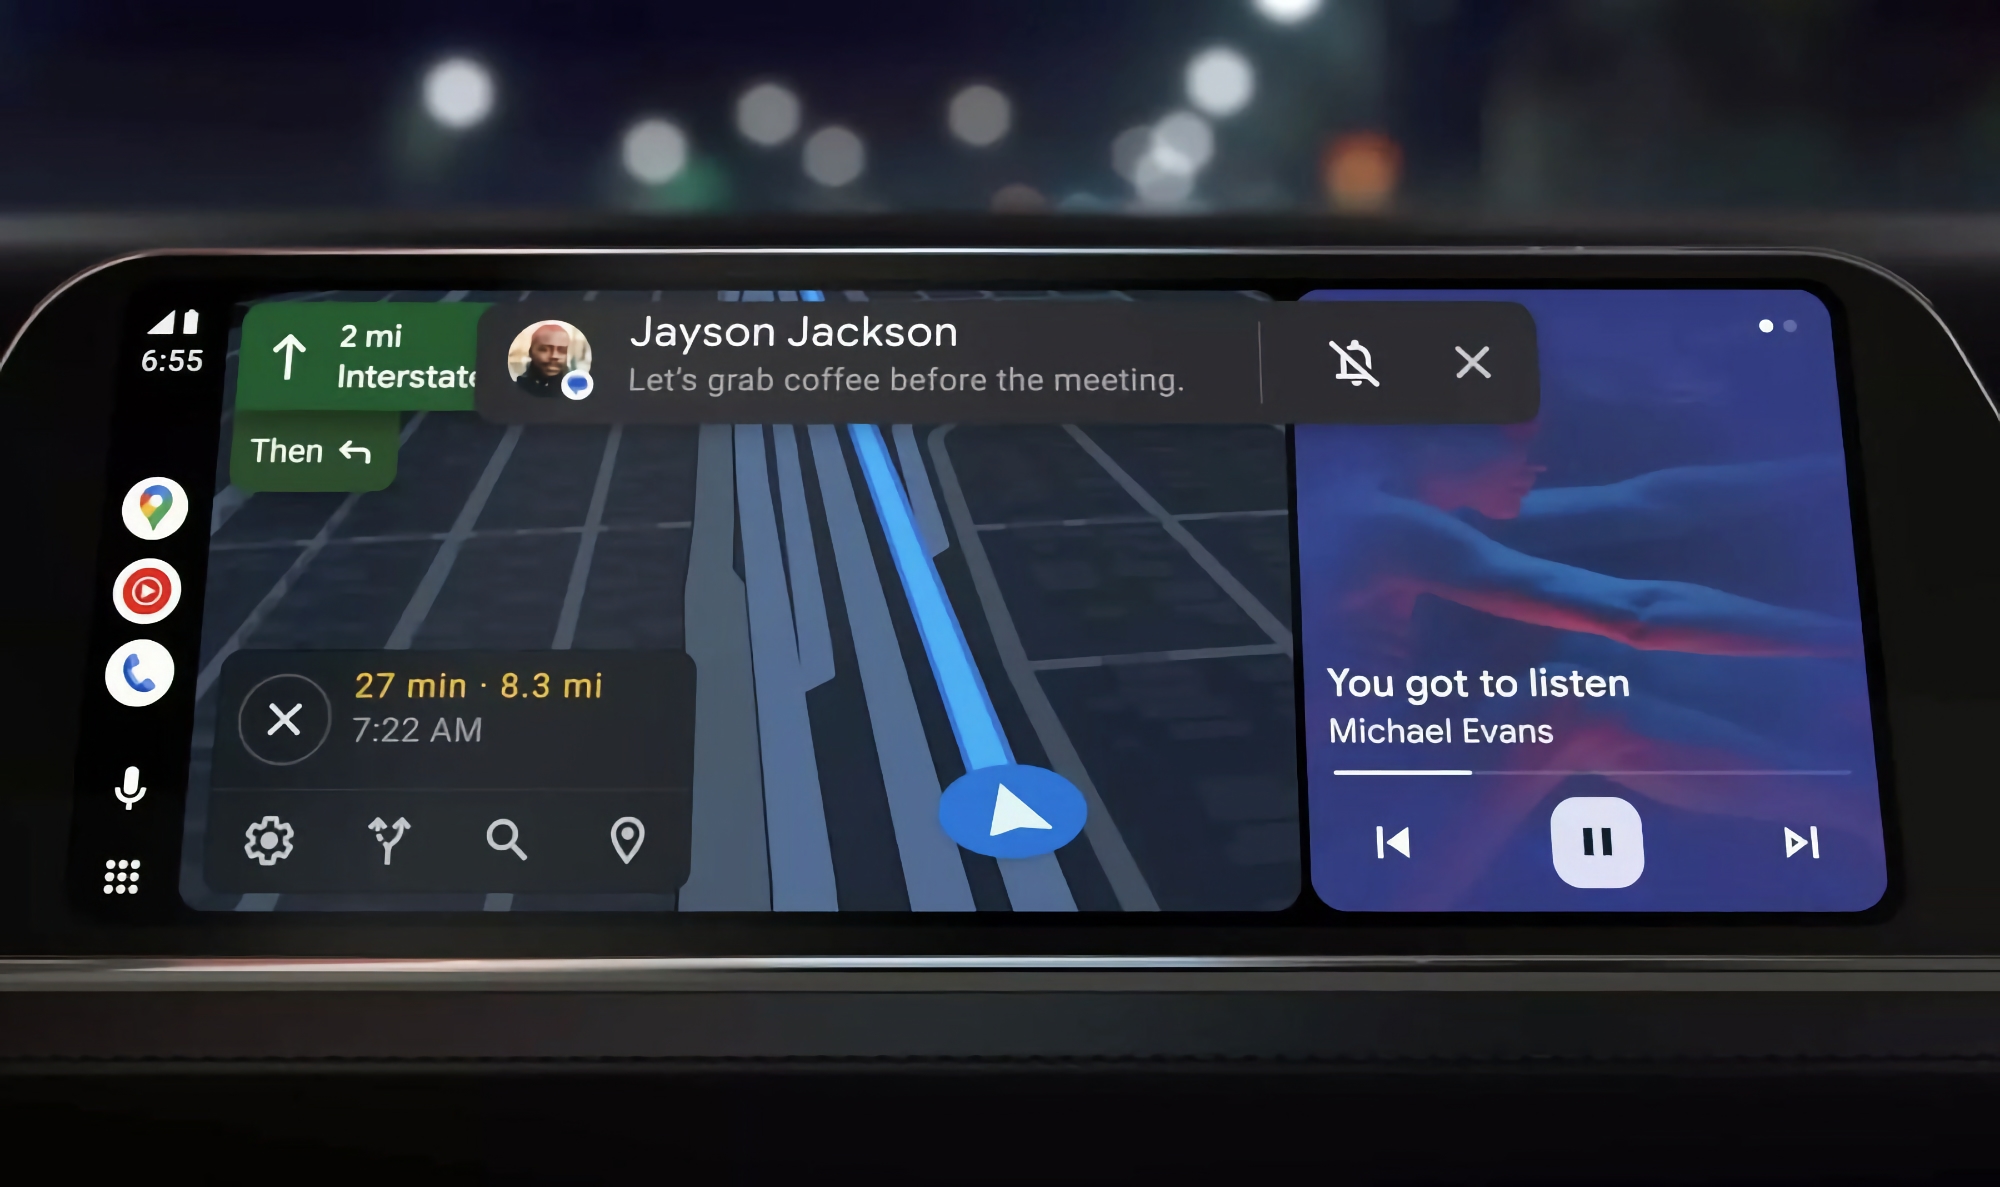 Google Assistant in Android Auto zal je berichten kunnen samenvatten met behulp van AI